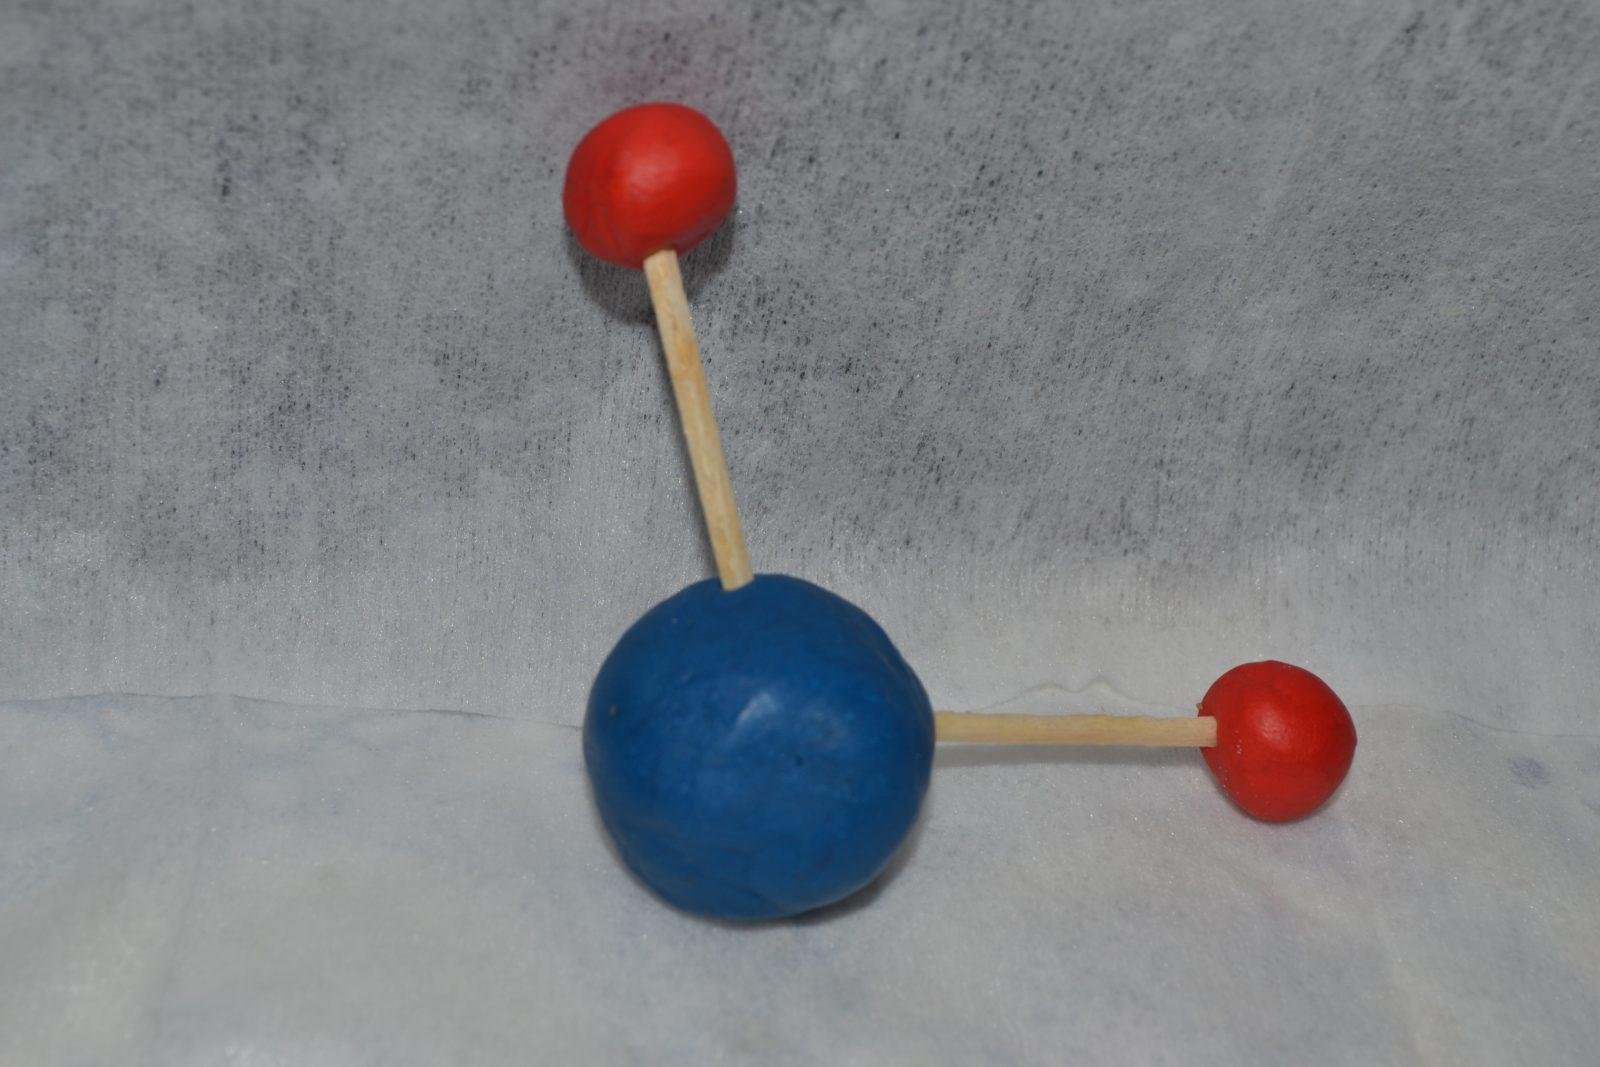 Молекула из пластилина. Модель молекулы из пластилина. Модель молекулы воды из пластилина. Модель молекулы воды. Макет молекулы воды.